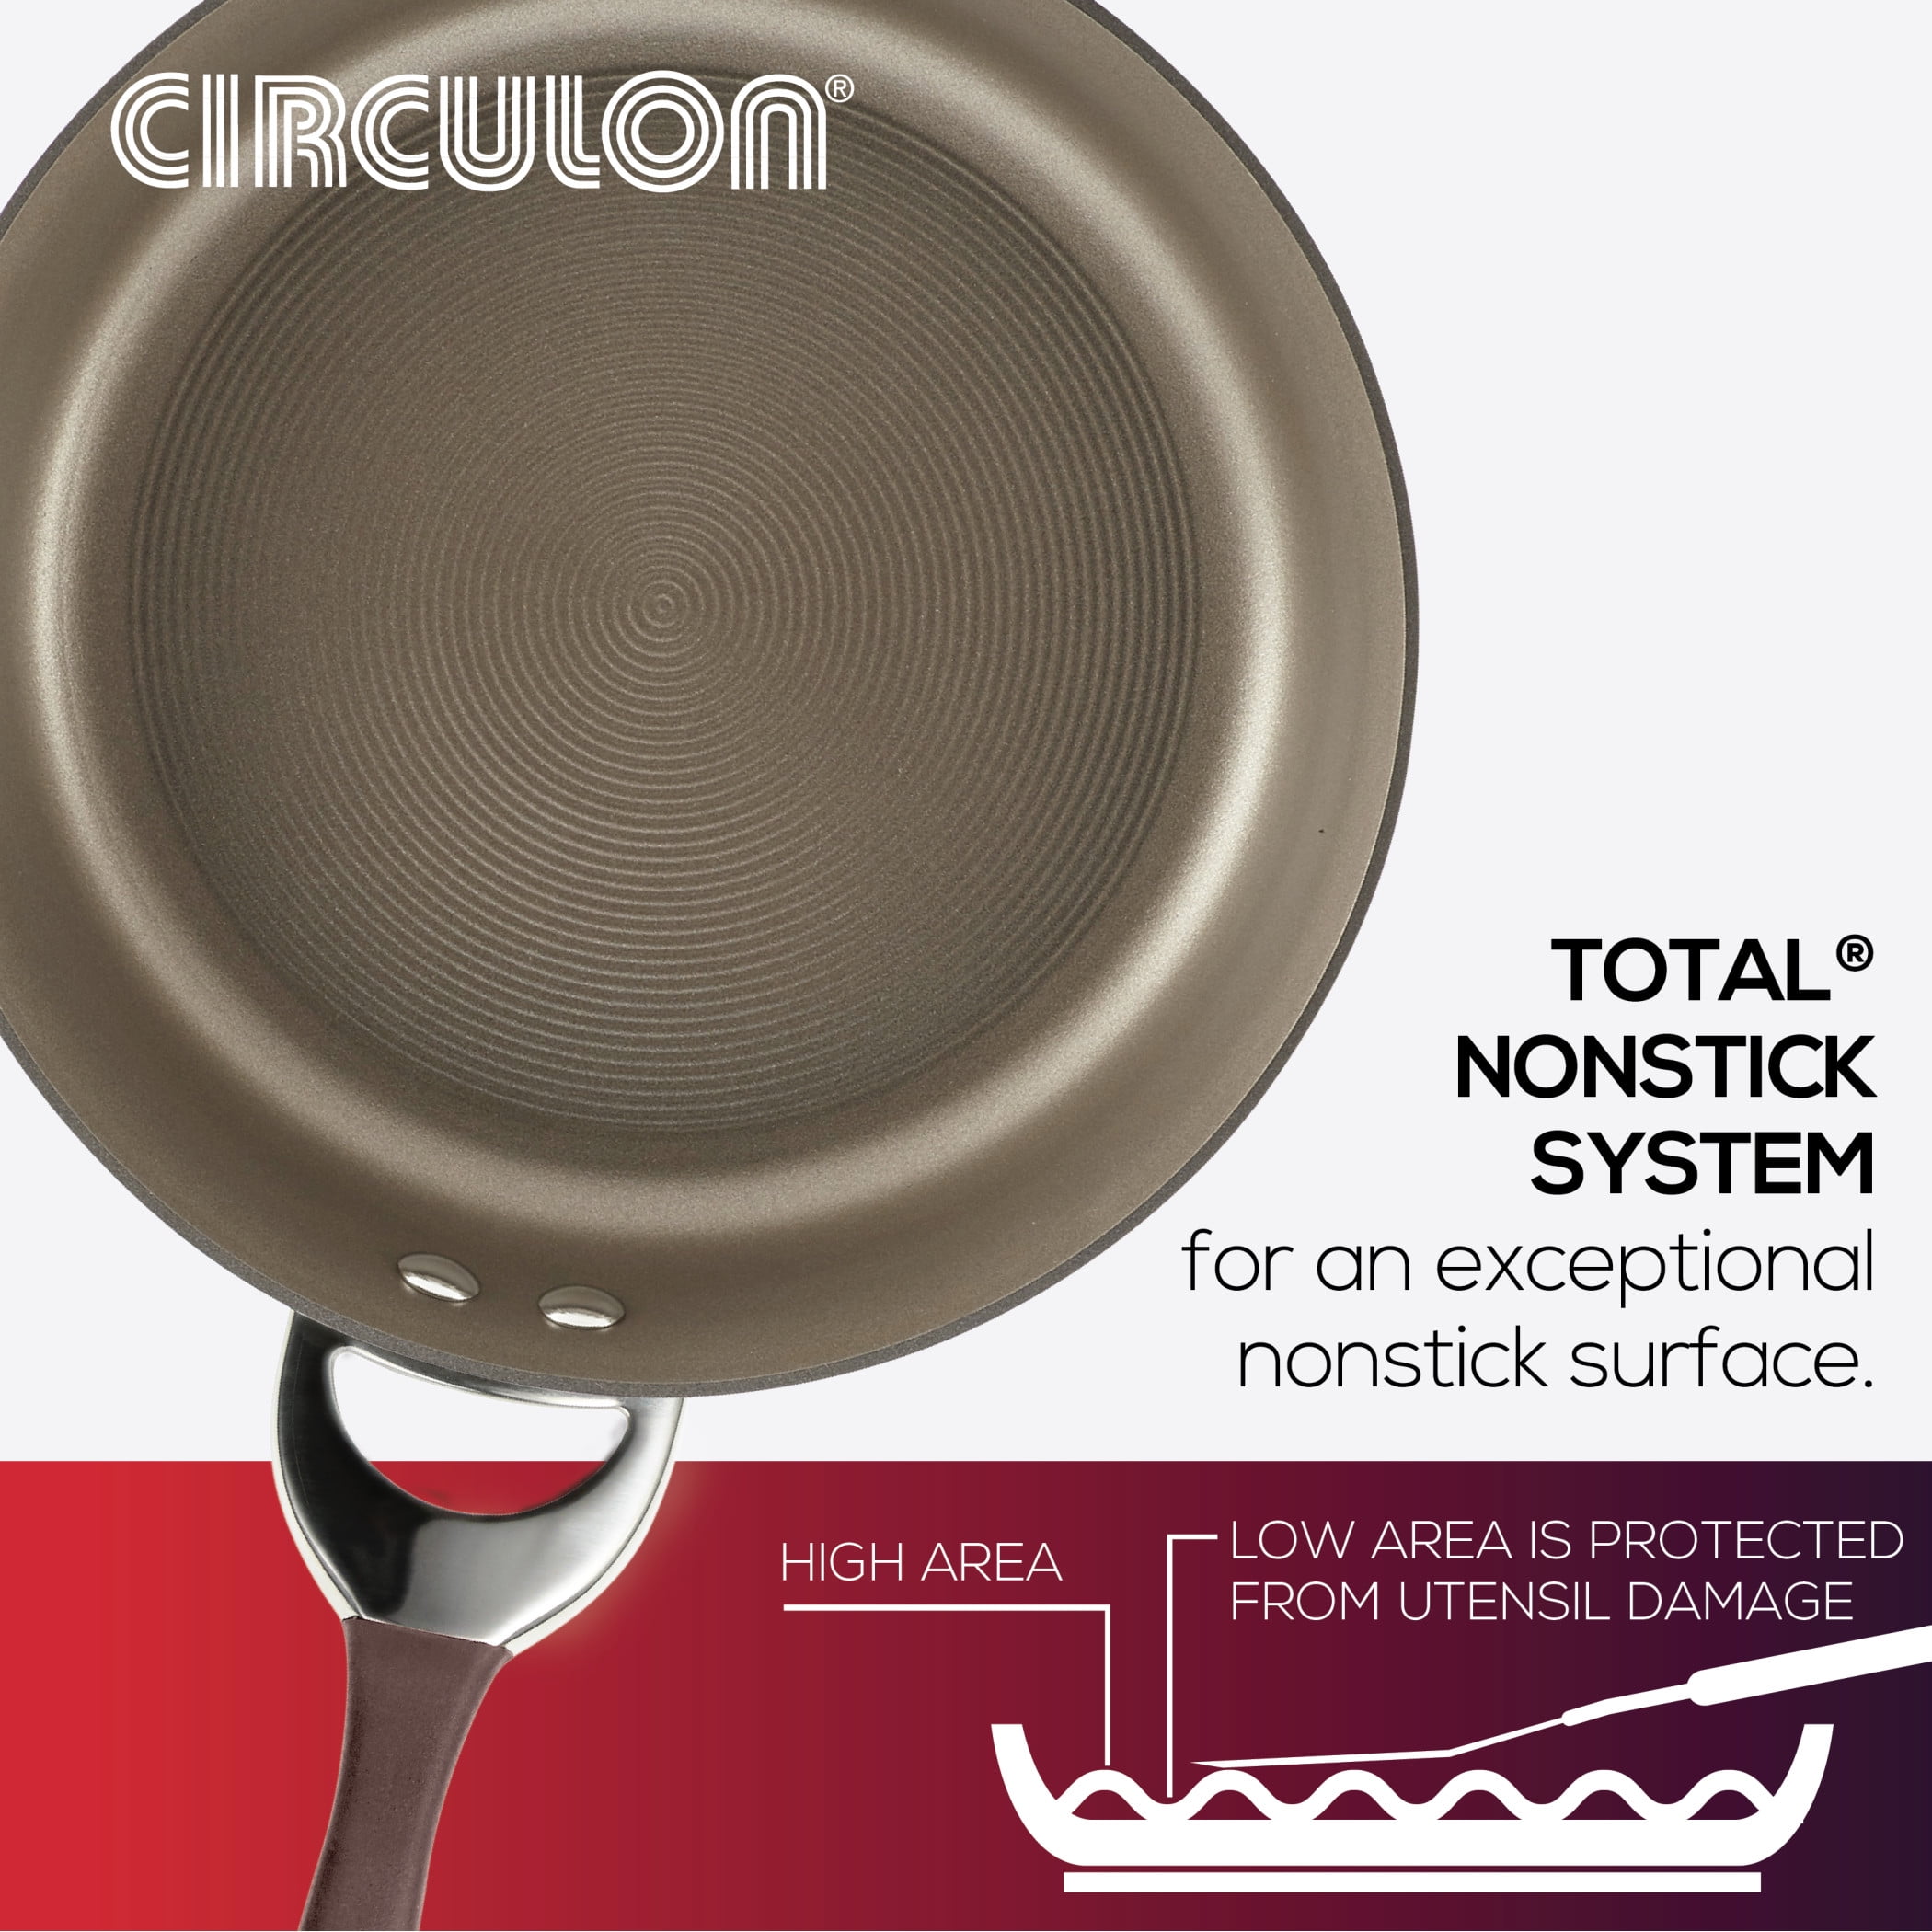 Circulon Cookware Symmetry 3.5 Qt Saucepan, NFM